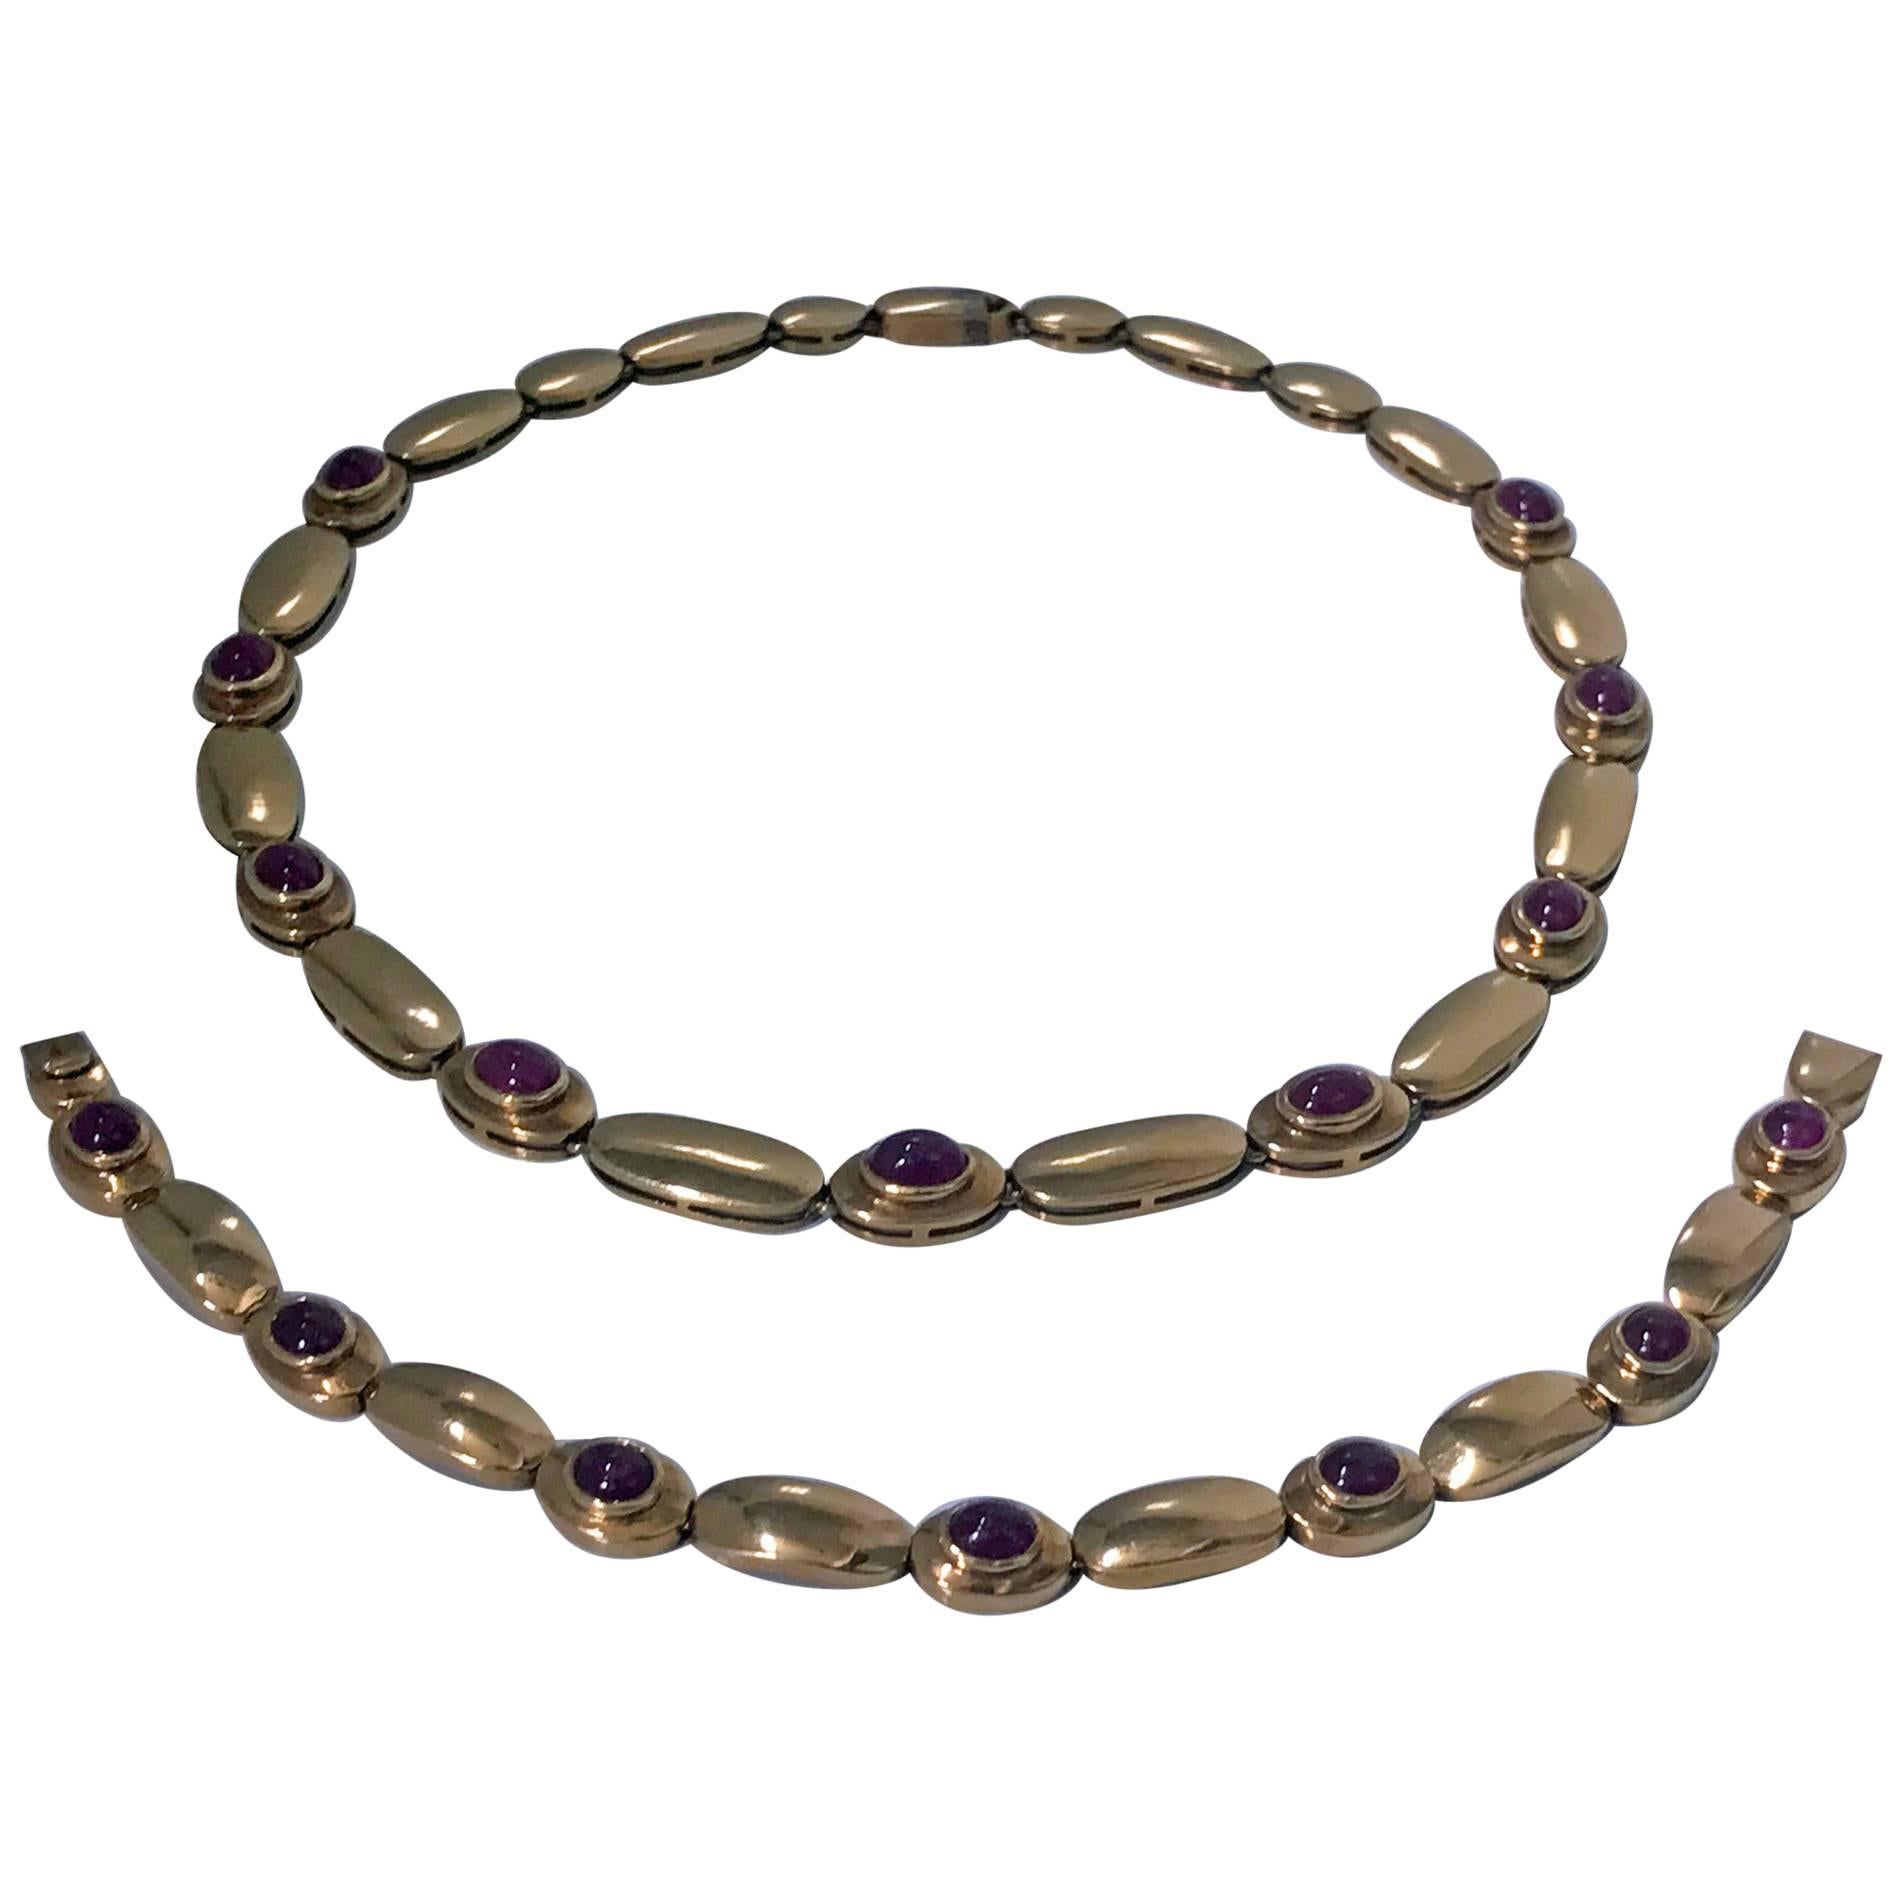 Cabochon Ruby Gold Necklace and Bracelet Set